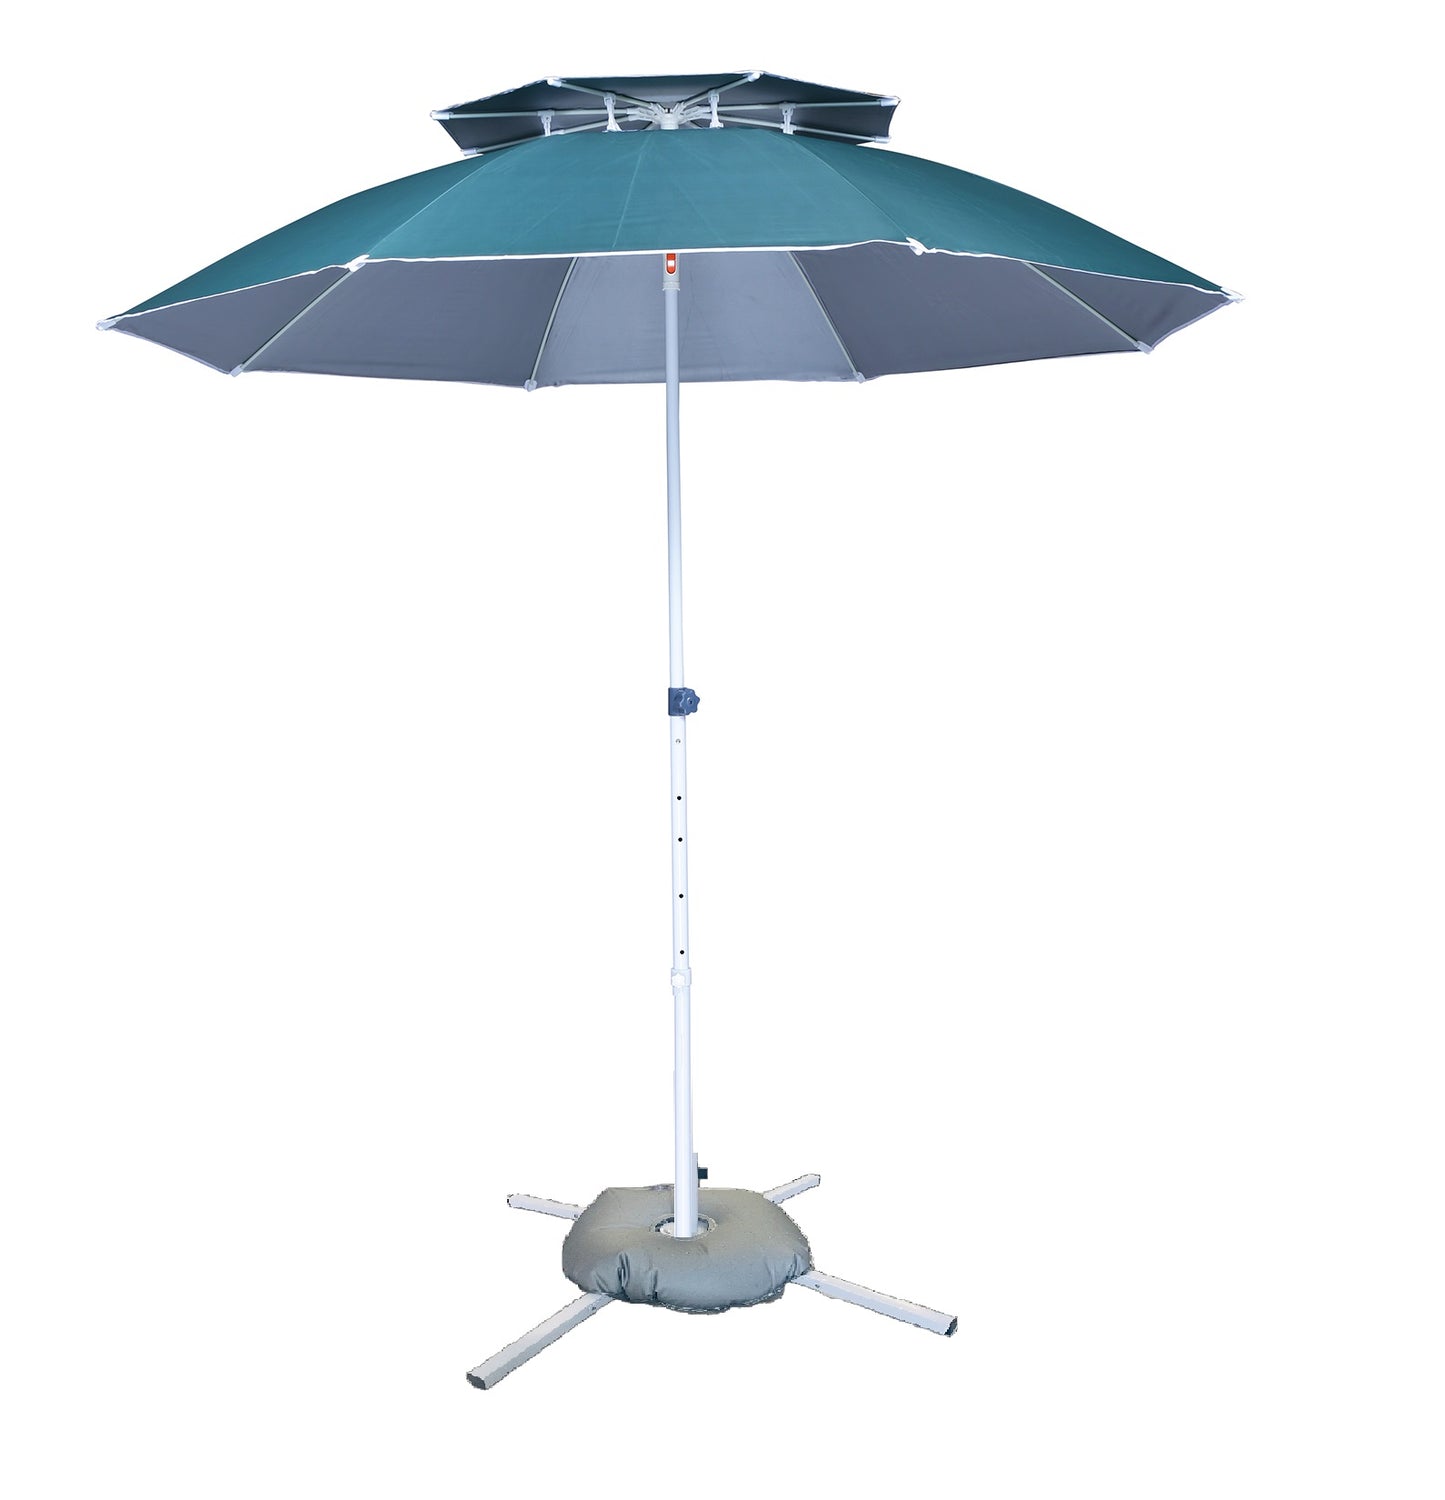 Outdoor Garden Umbrella with Base